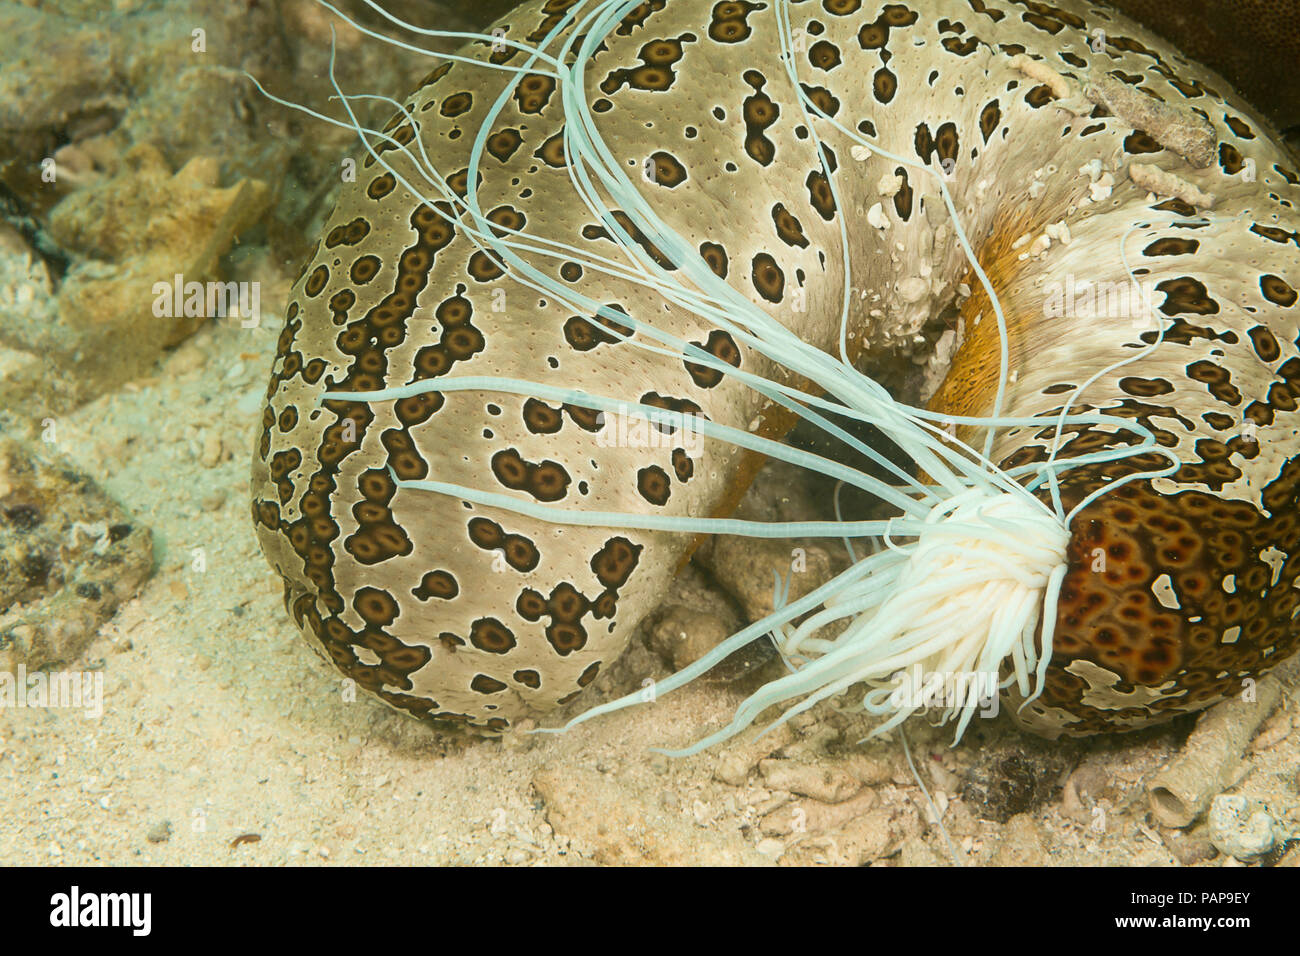 Le concombre de mer, Bohadschia argus, illustrée ici, a éjecté une partie d'Cuvierian itÕs organes internes appelés tubules. Ces collants significativement st Banque D'Images